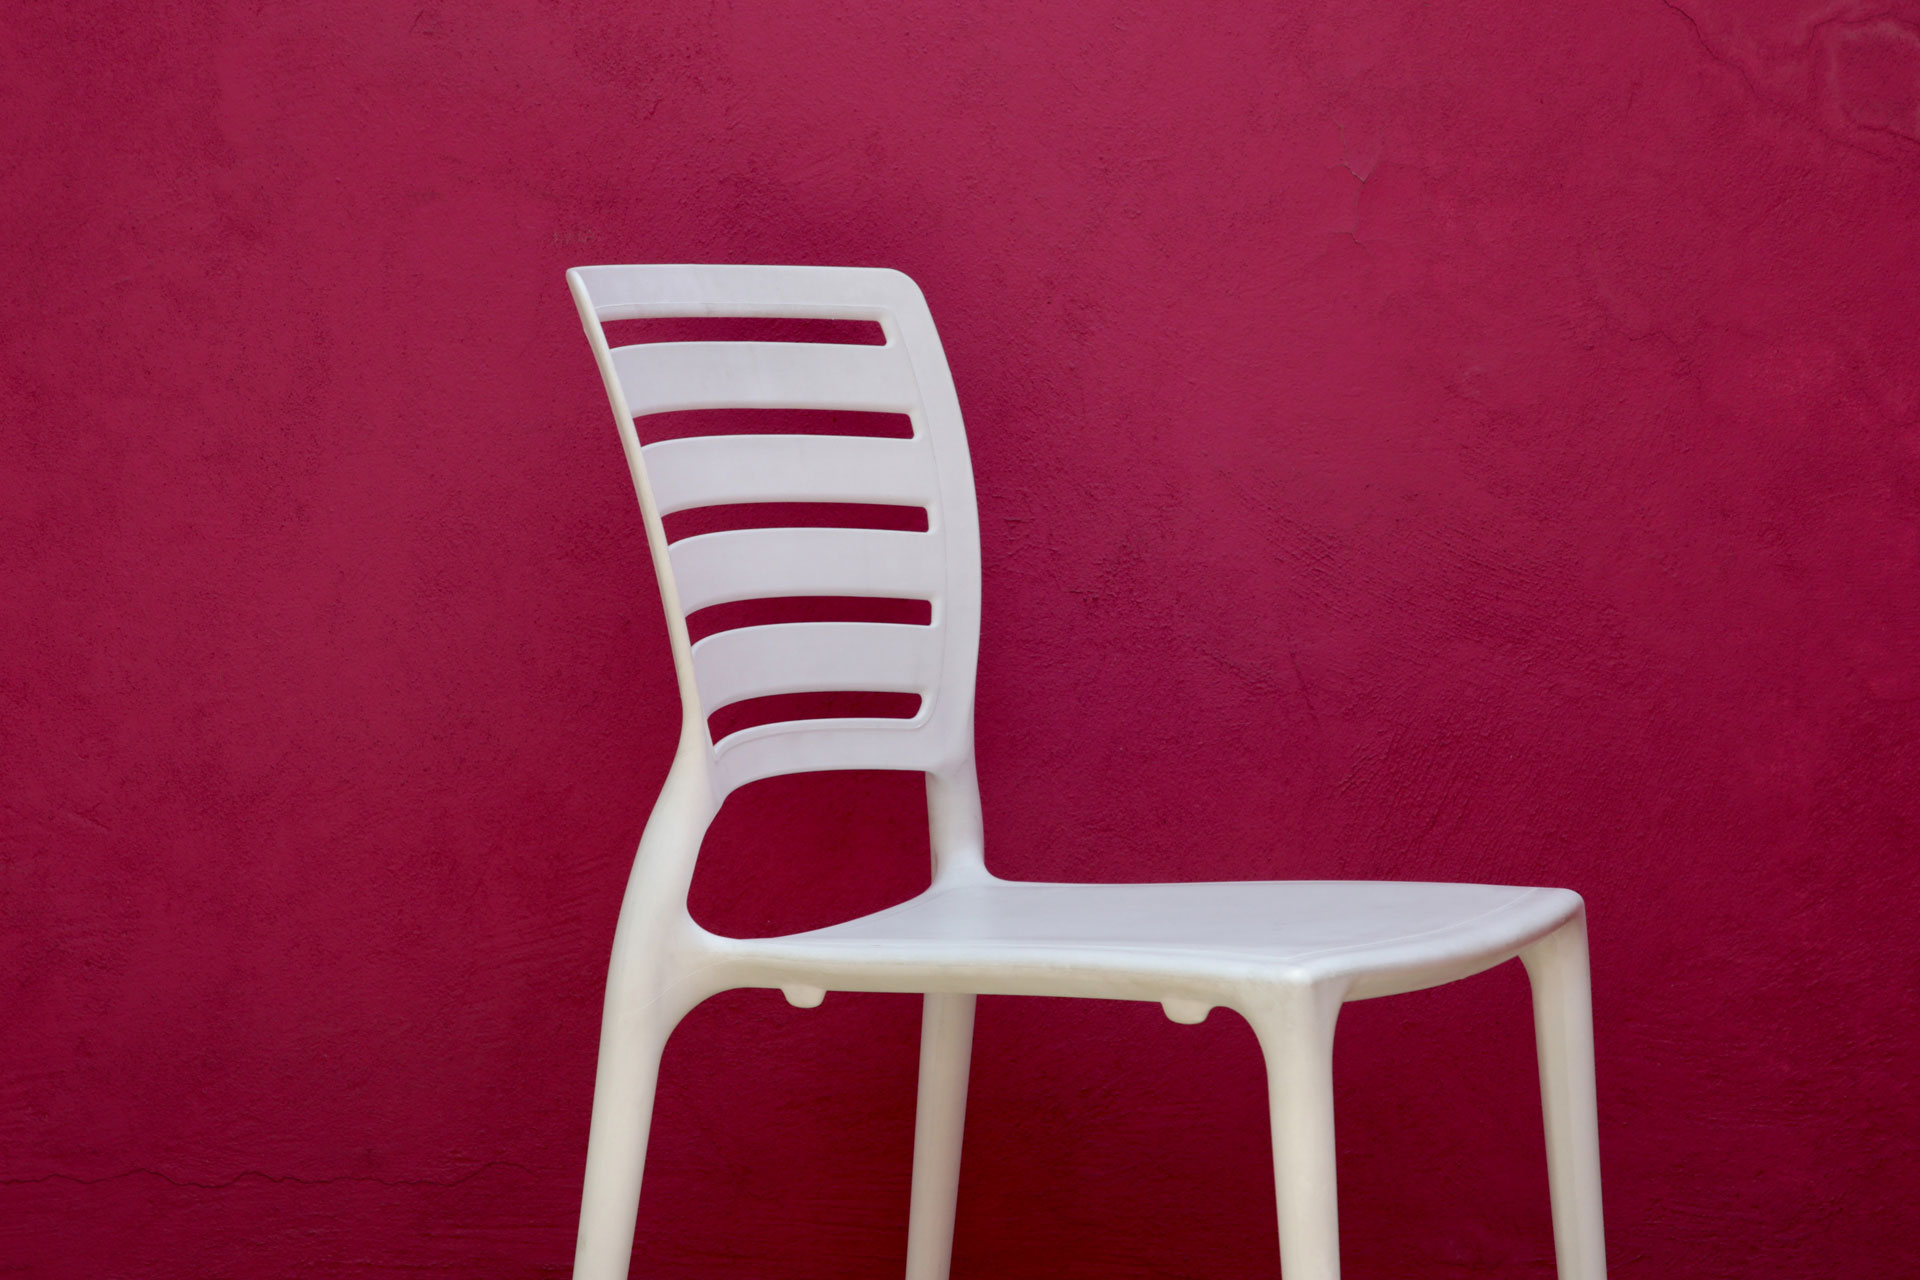 chair Photo by John Schaidler on Unsplash